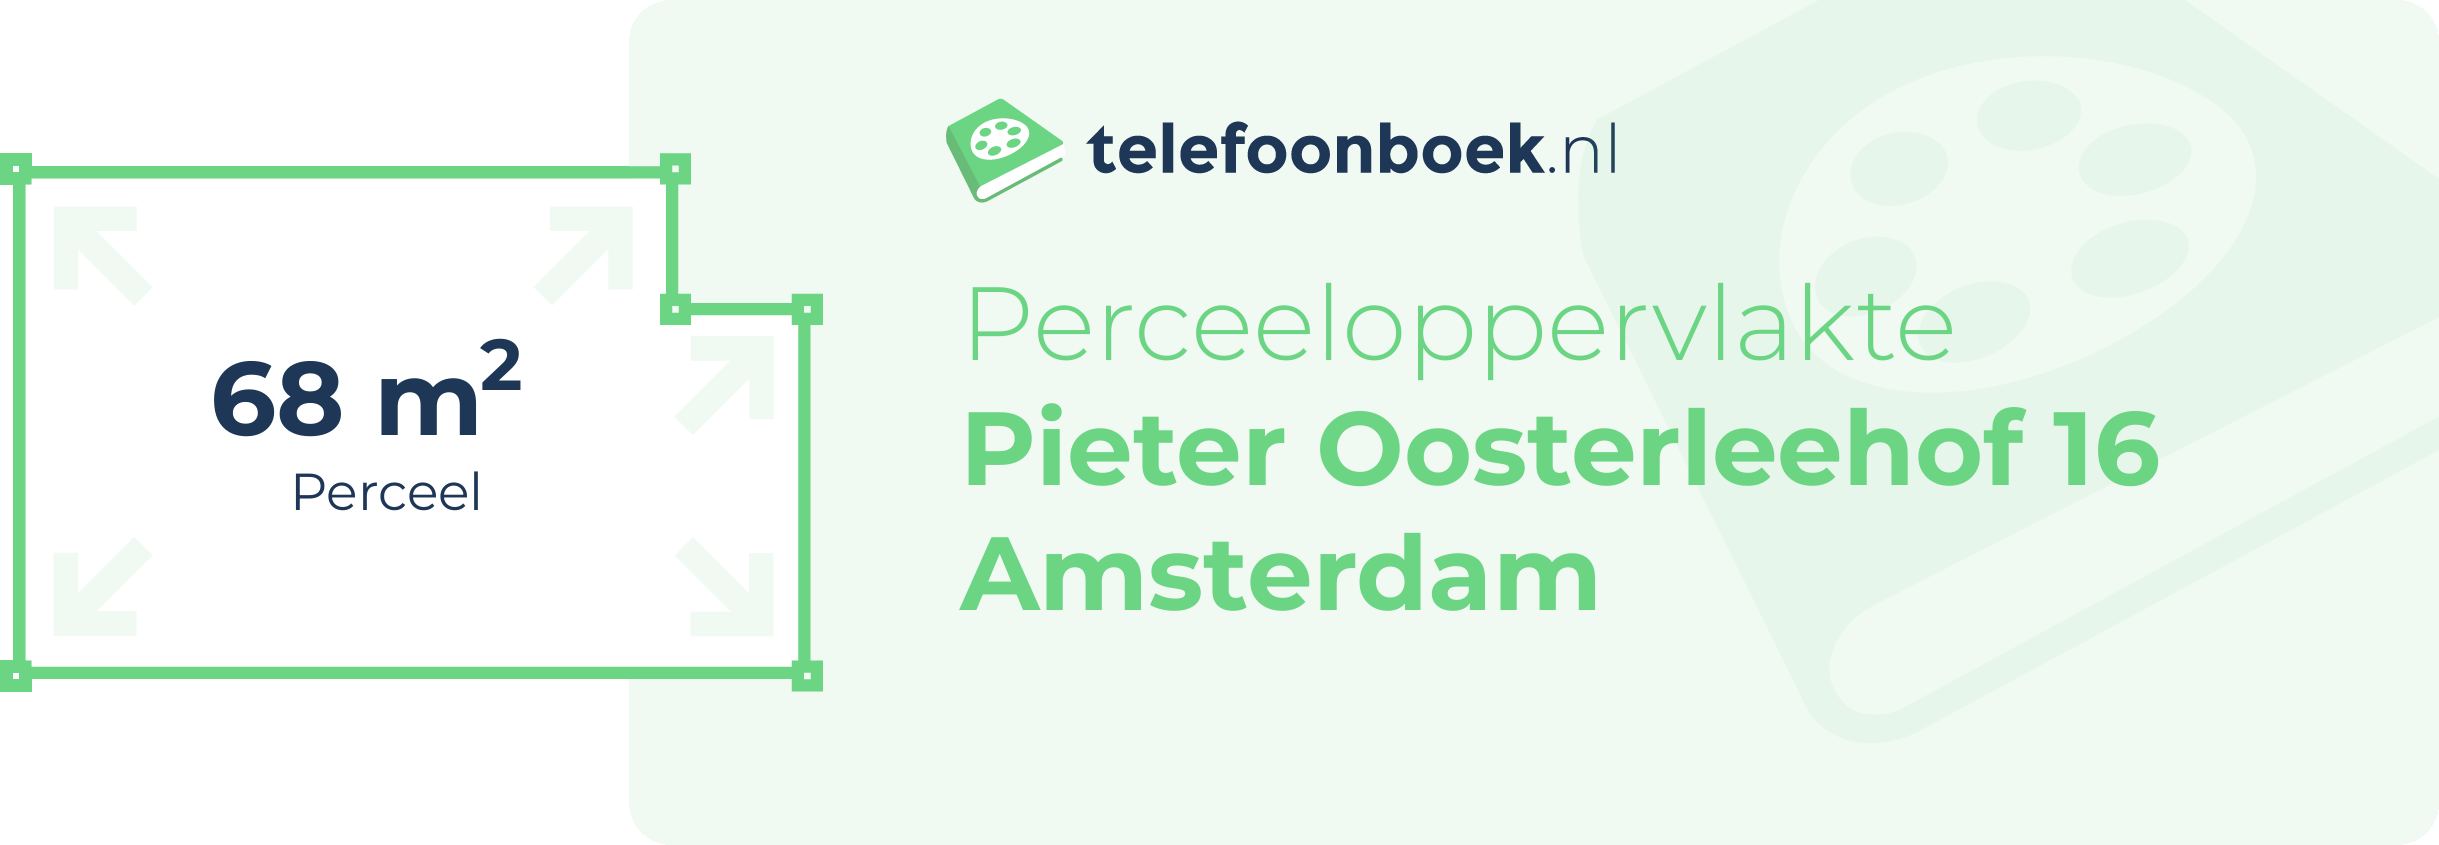 Perceeloppervlakte Pieter Oosterleehof 16 Amsterdam